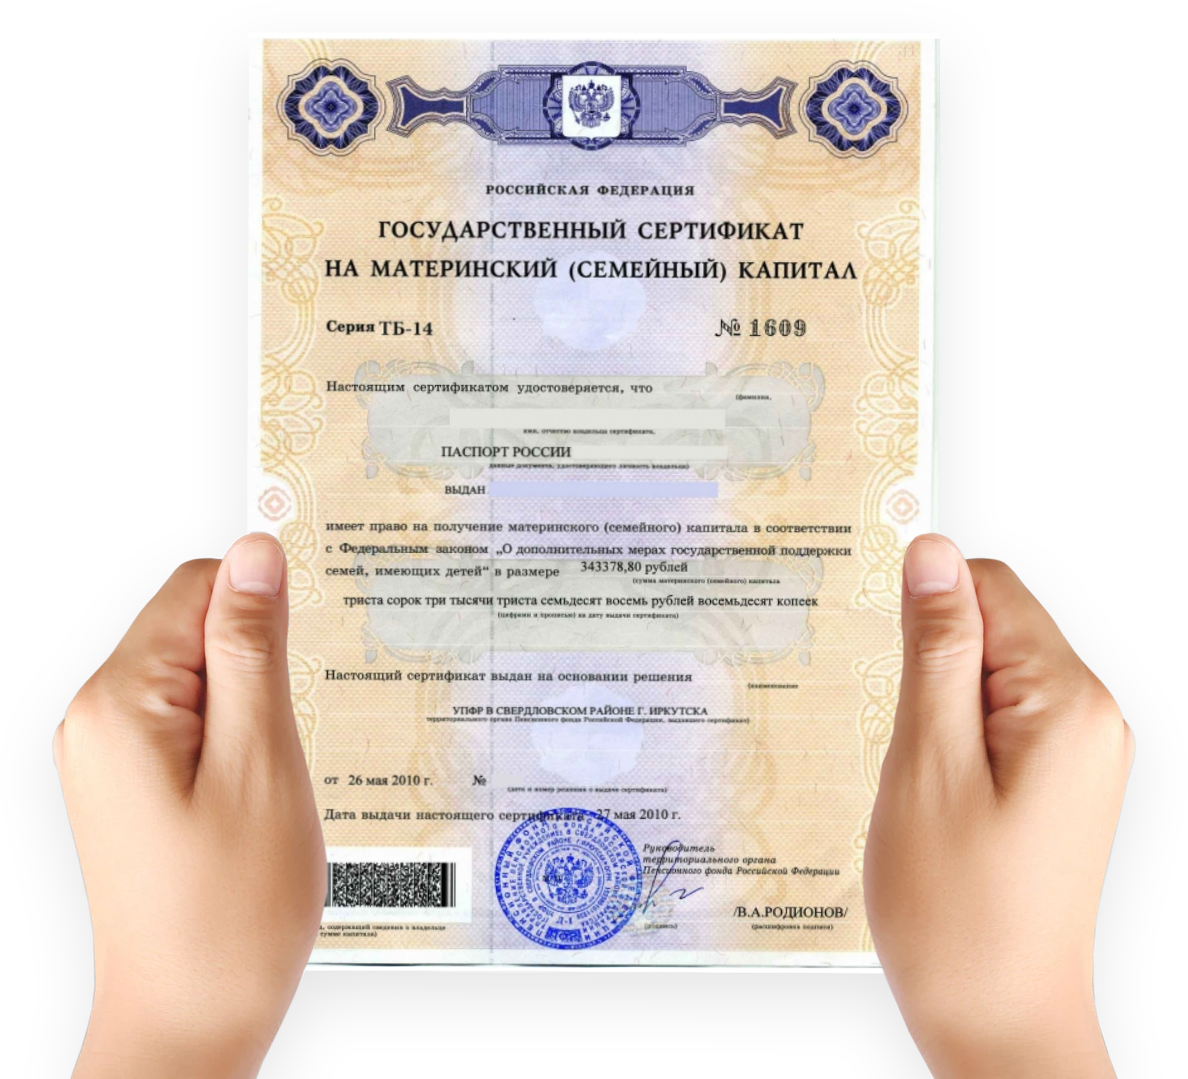 Пфр материнский сертификат. Как выглядит сертификат на мат капитал. Как выглядит мат капитал сертификат в электронном виде. Материнский капитал на второго ребенка сертификат как выглядит. Сертификат на материнский капитал 2020.